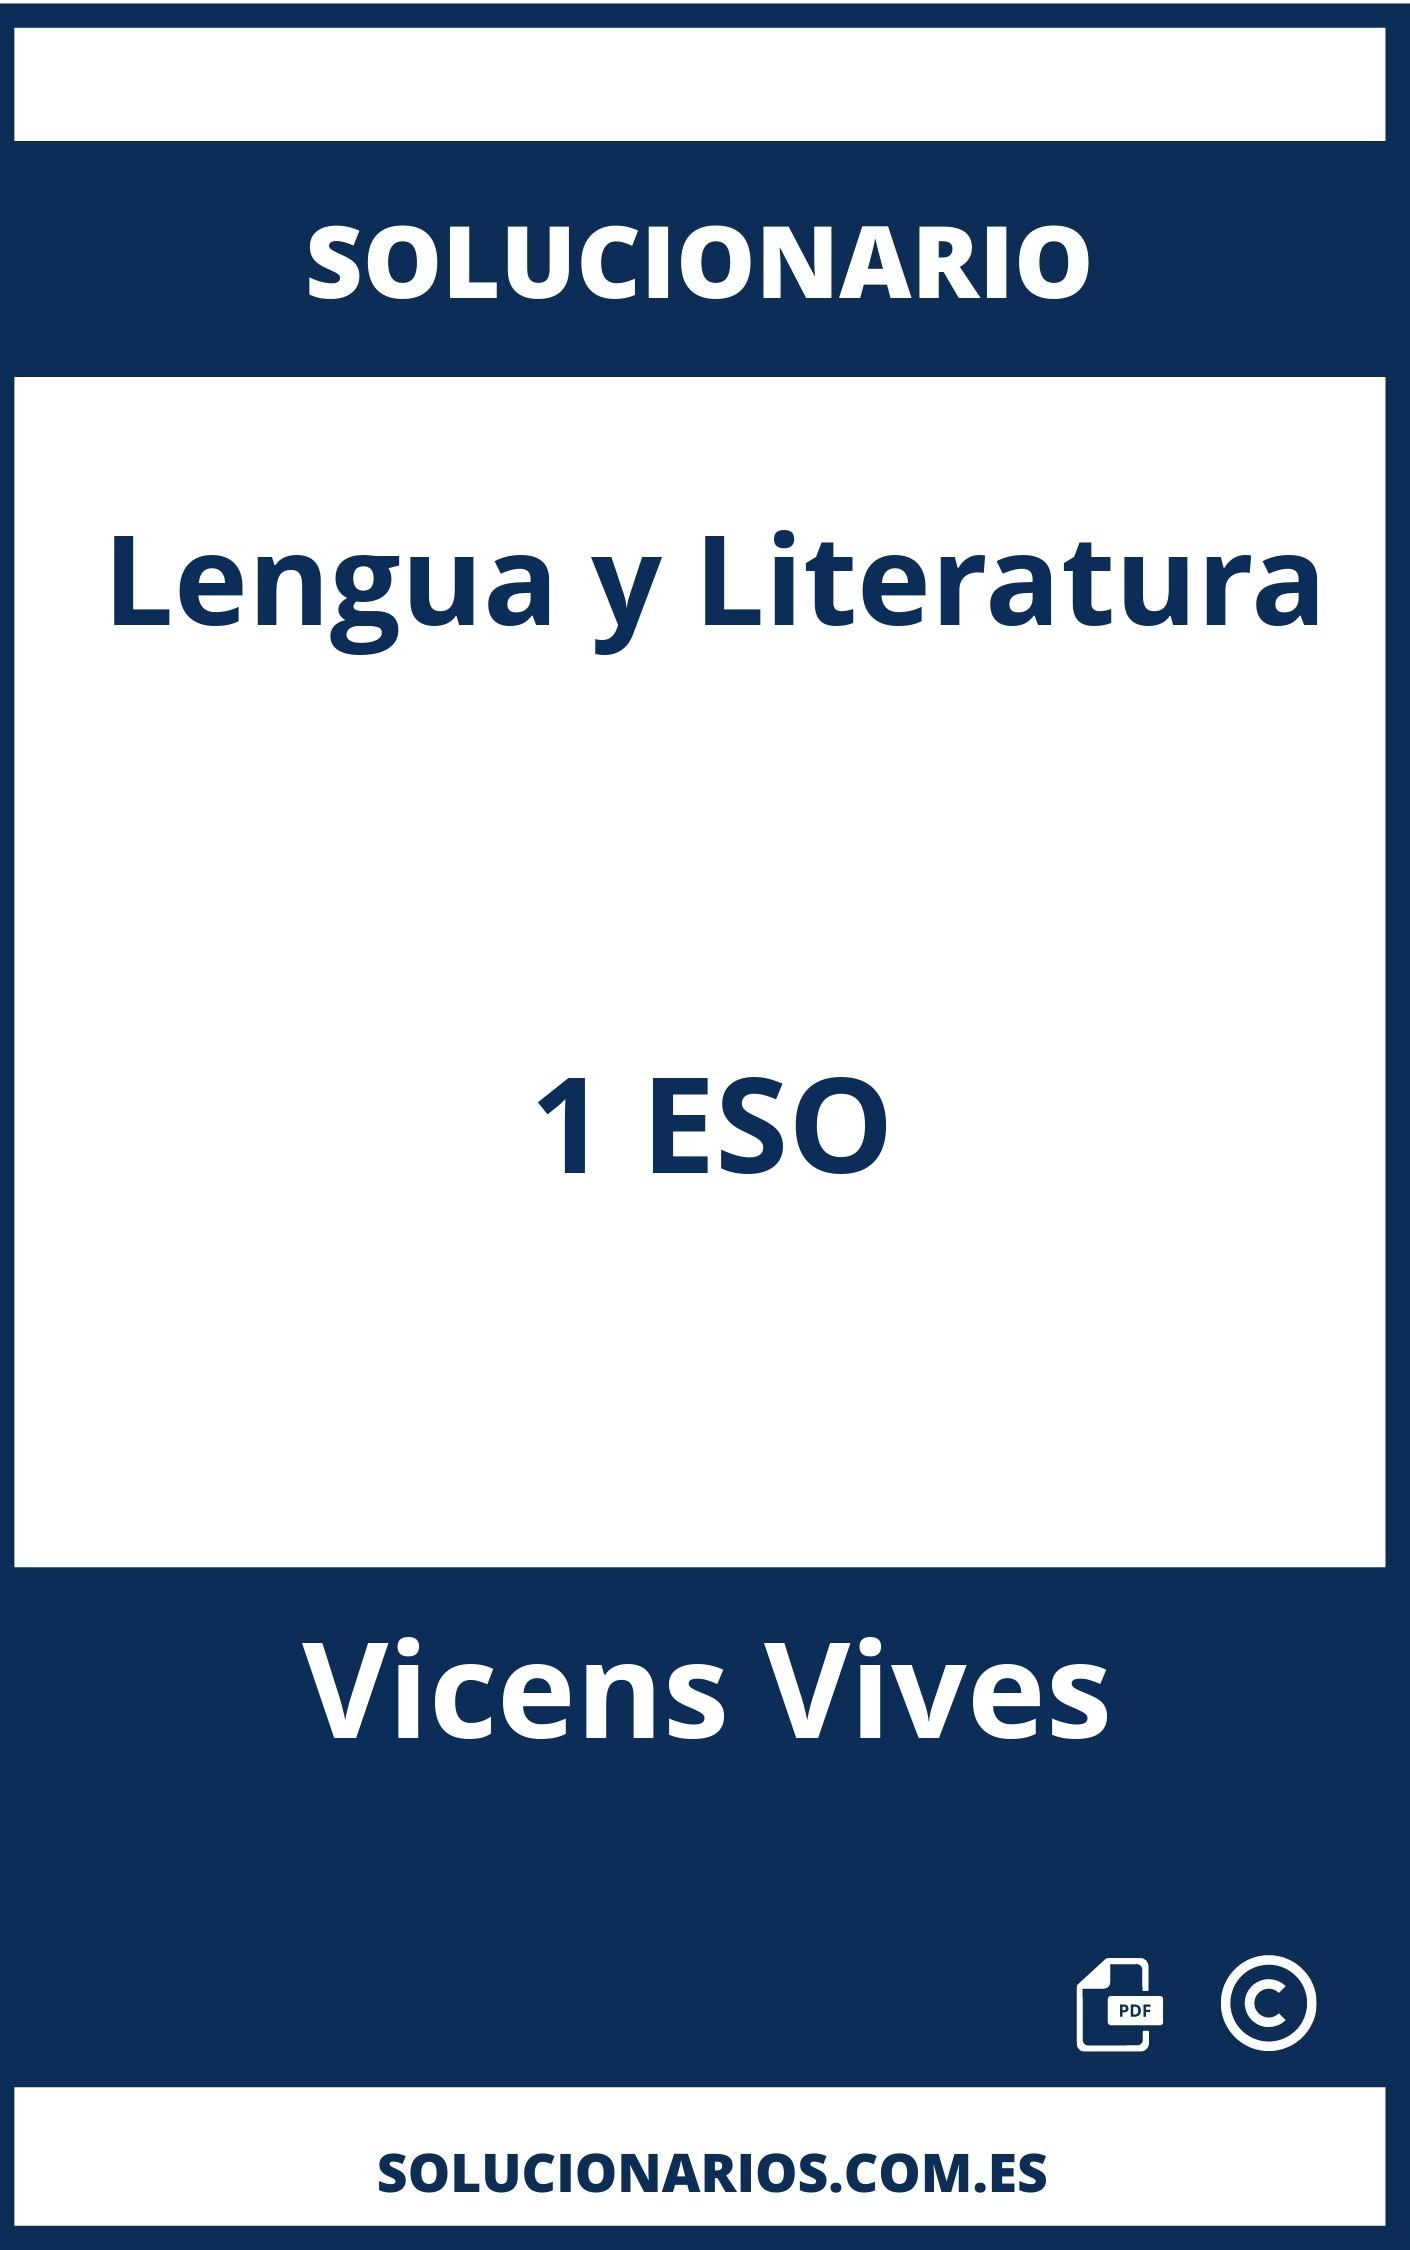 Solucionario Lengua y Literatura 1 ESO Vicens Vives